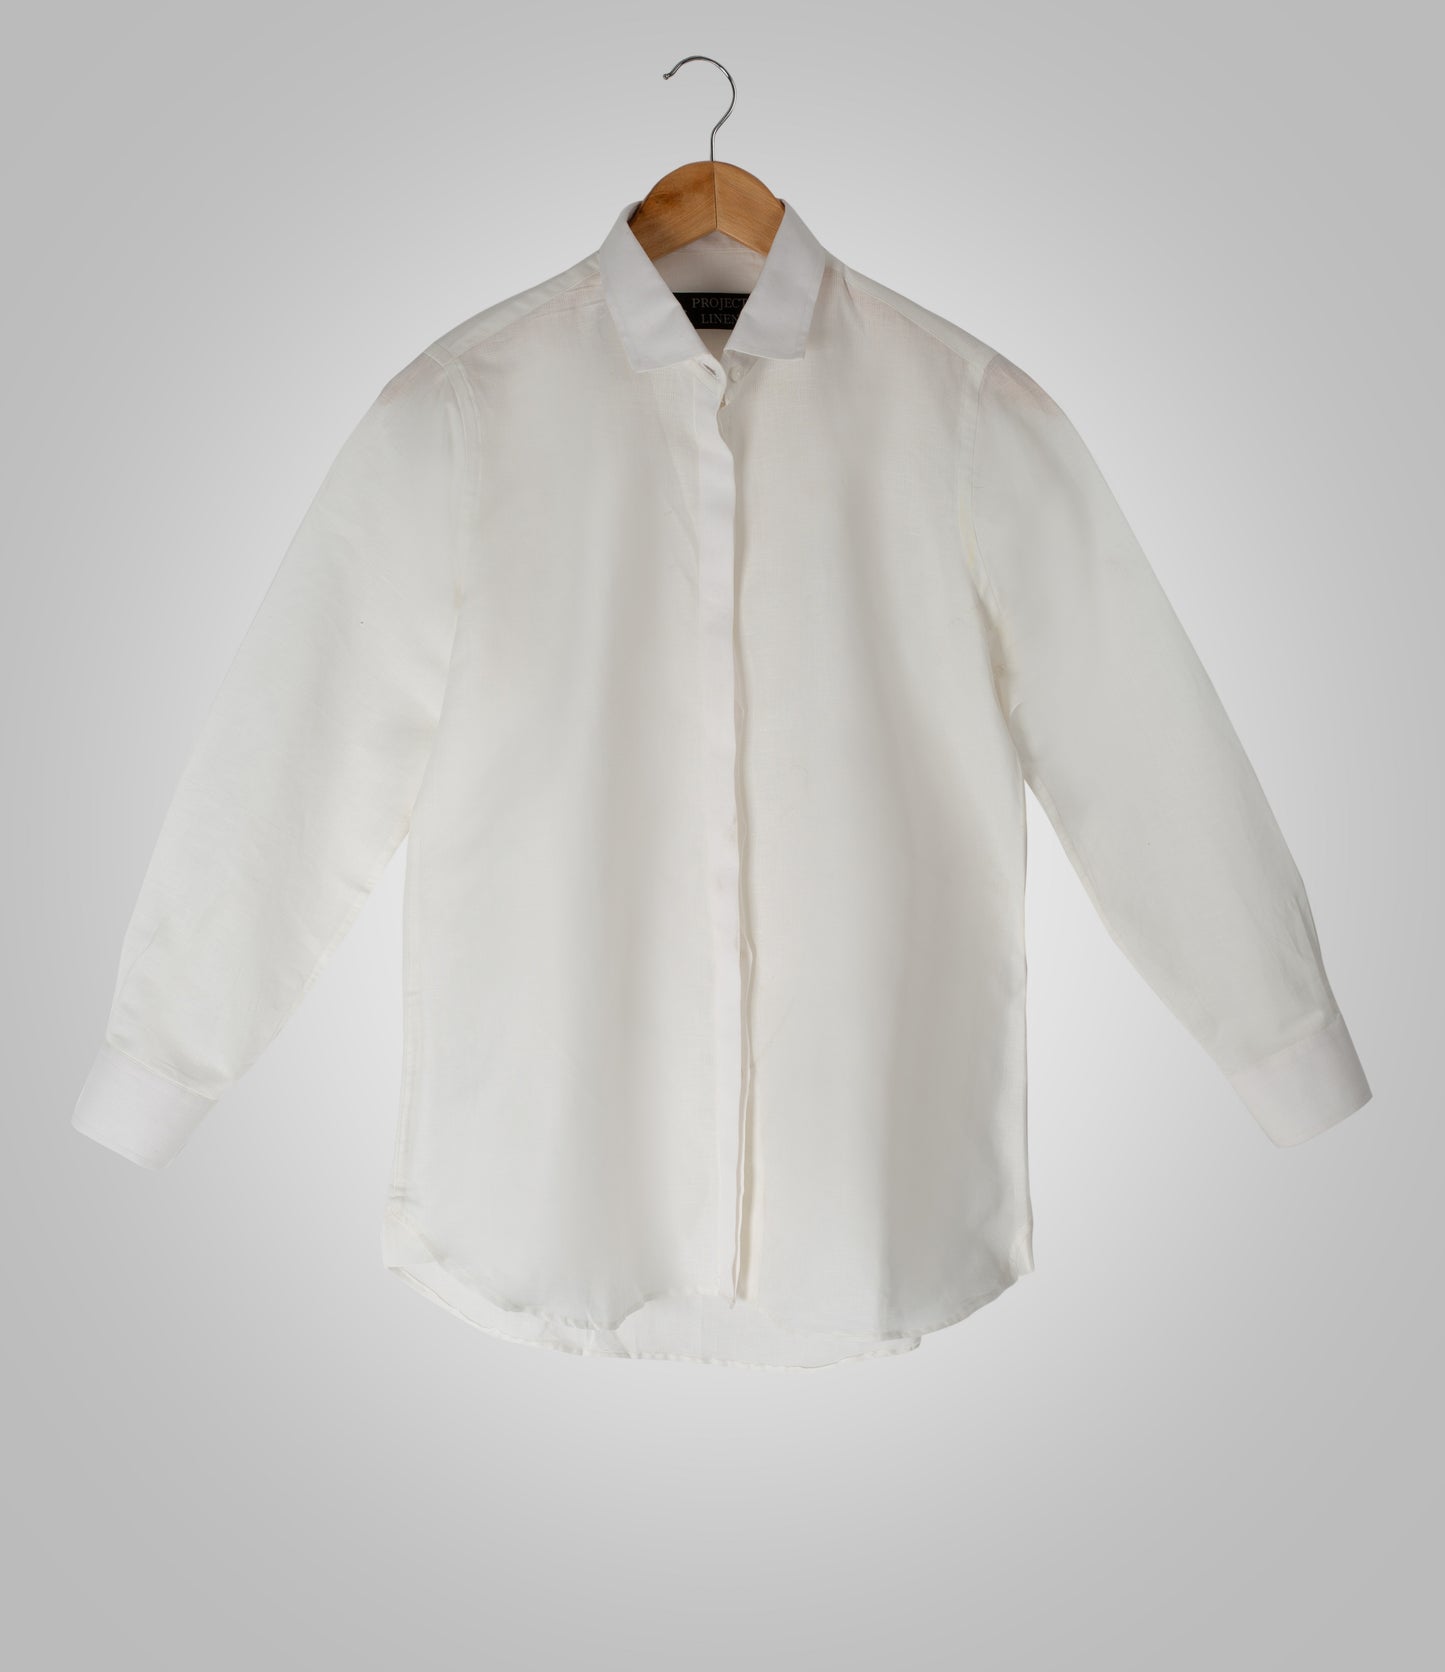 Plain White Linen Shirt - Her's